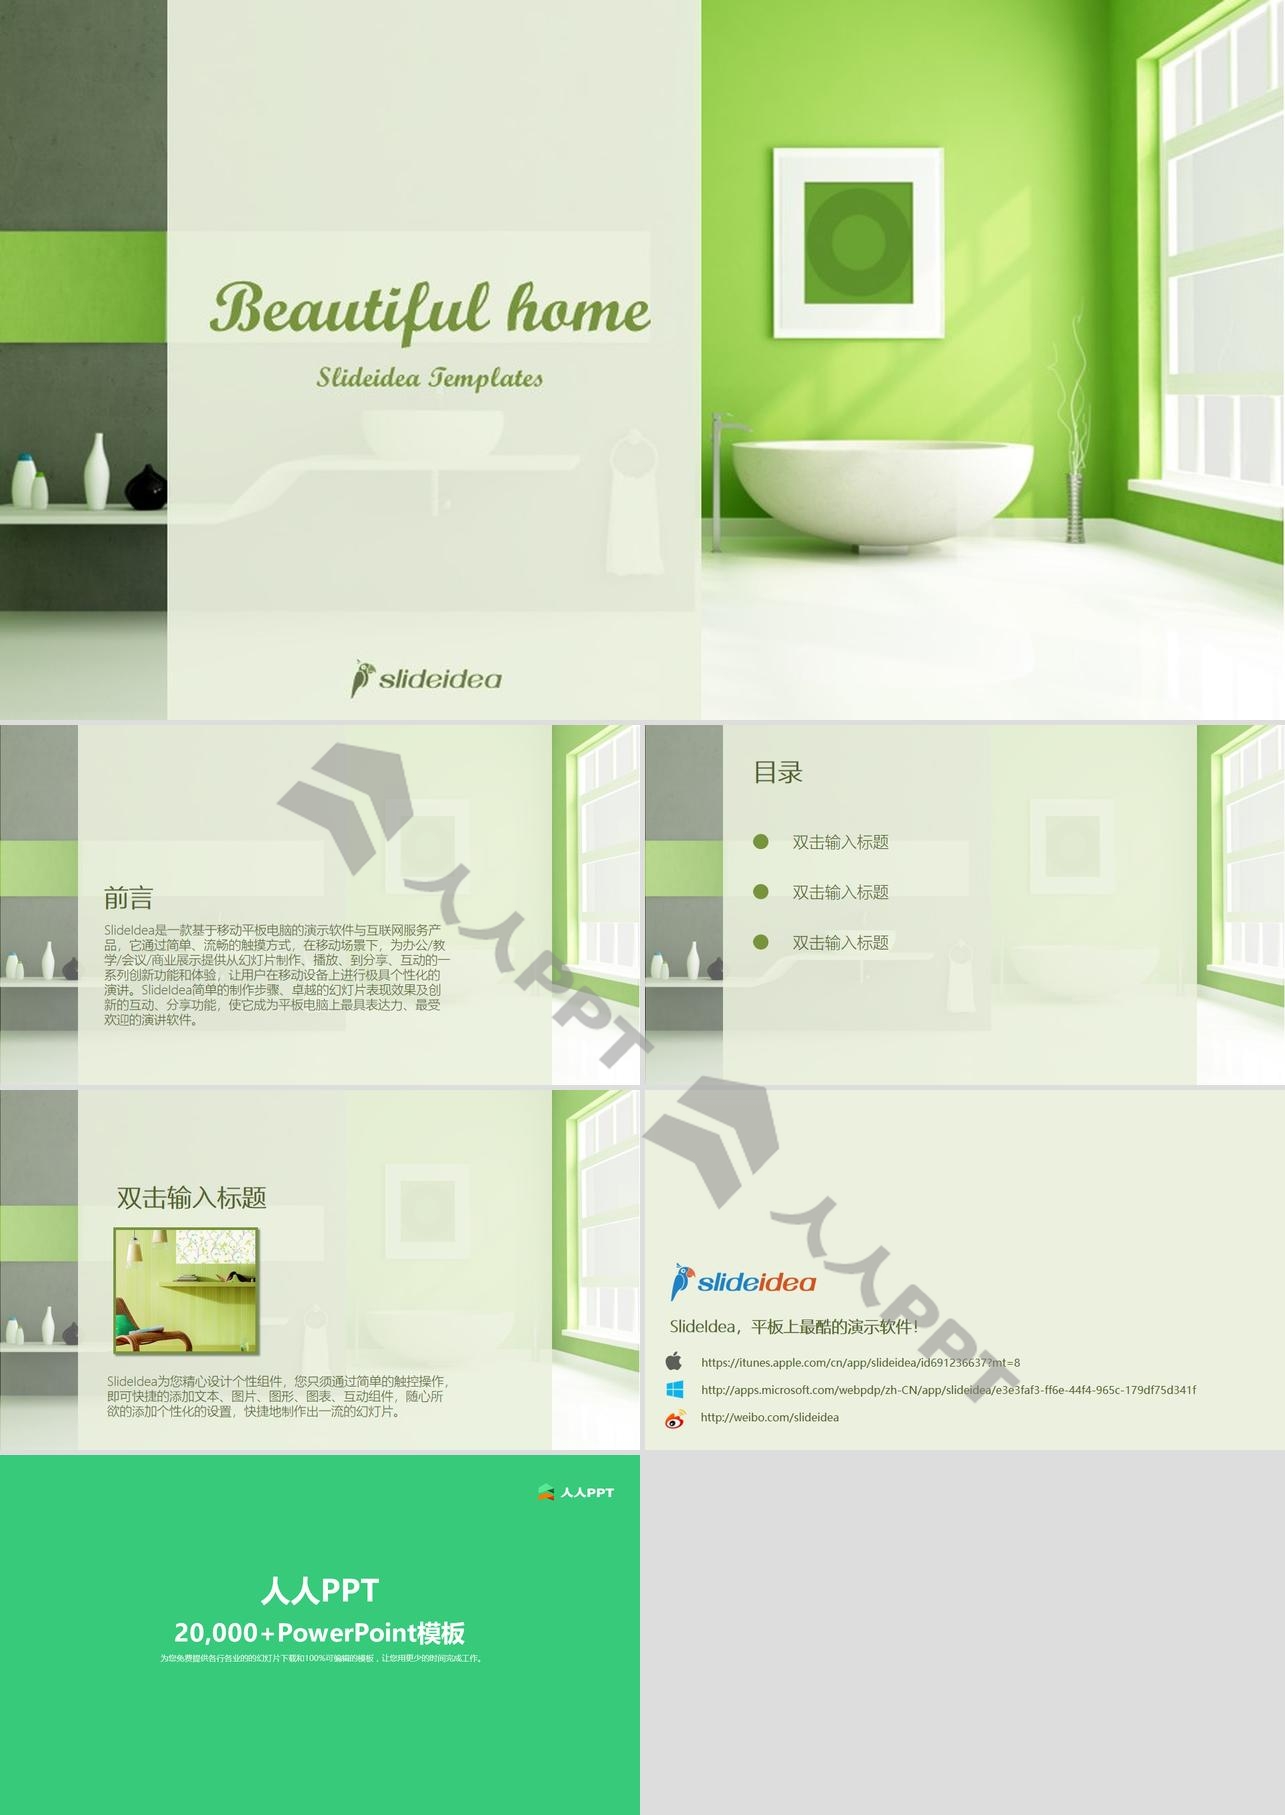 绿色环保主题室内装潢温馨家庭环境PPT模板长图